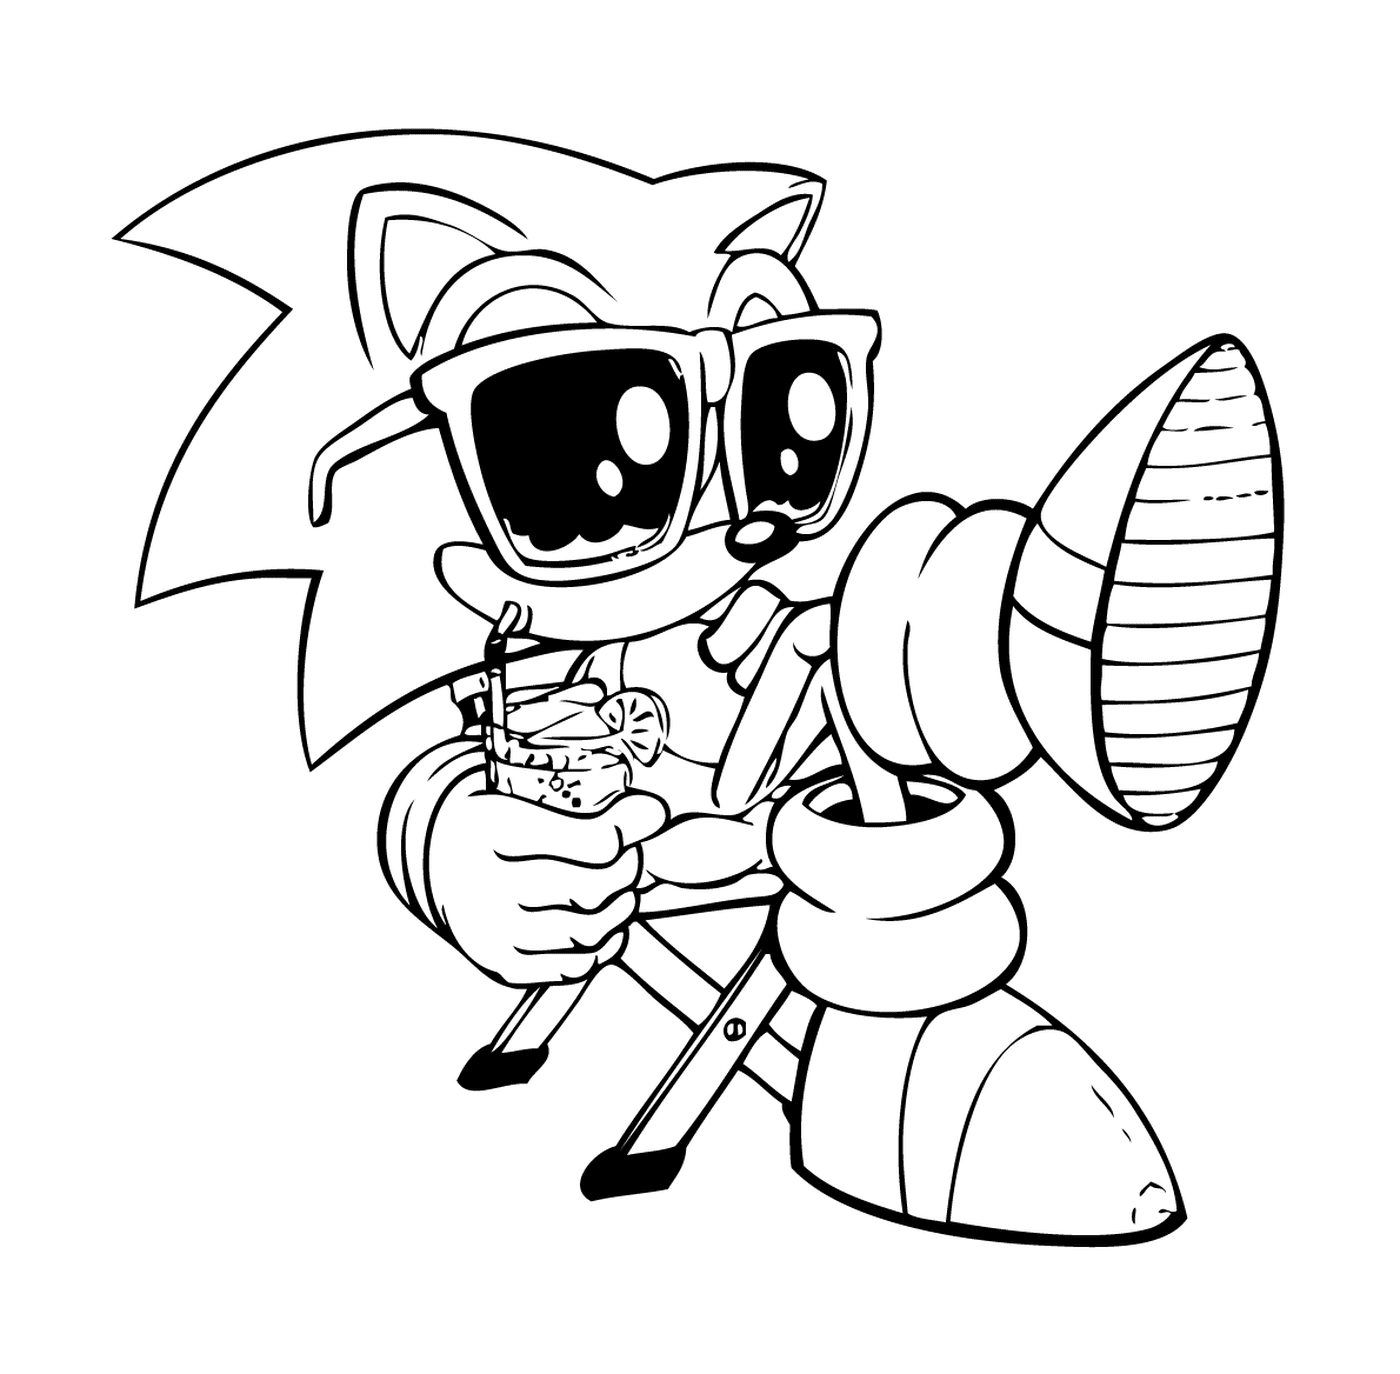  Sonic ágil e ativo 